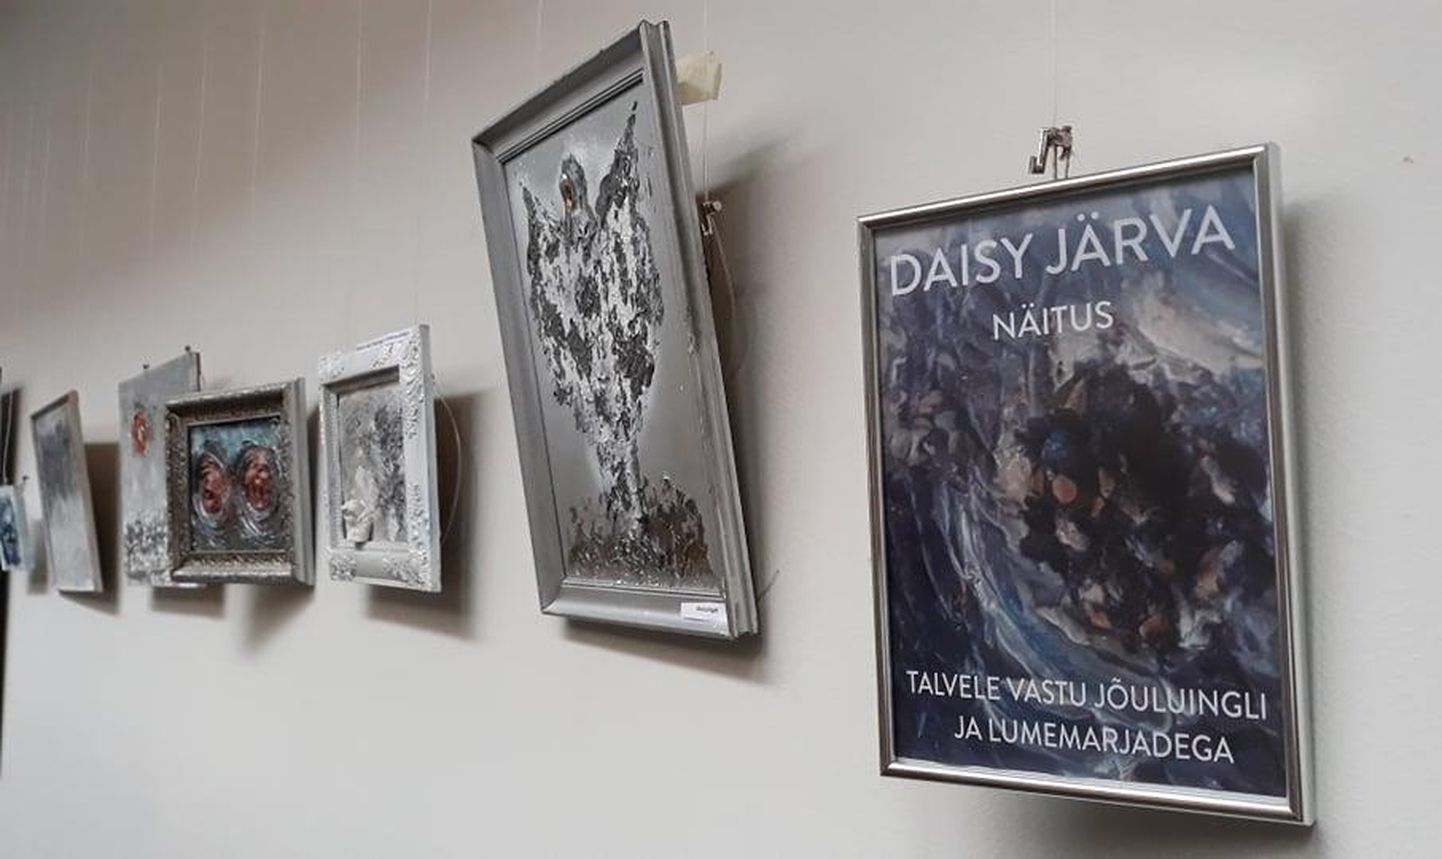 Tartu ülikooli Pärnu kolledžis näeb Daisy Järva näitust “Talvele vastu lumemarjade ja jõuluingliga”.